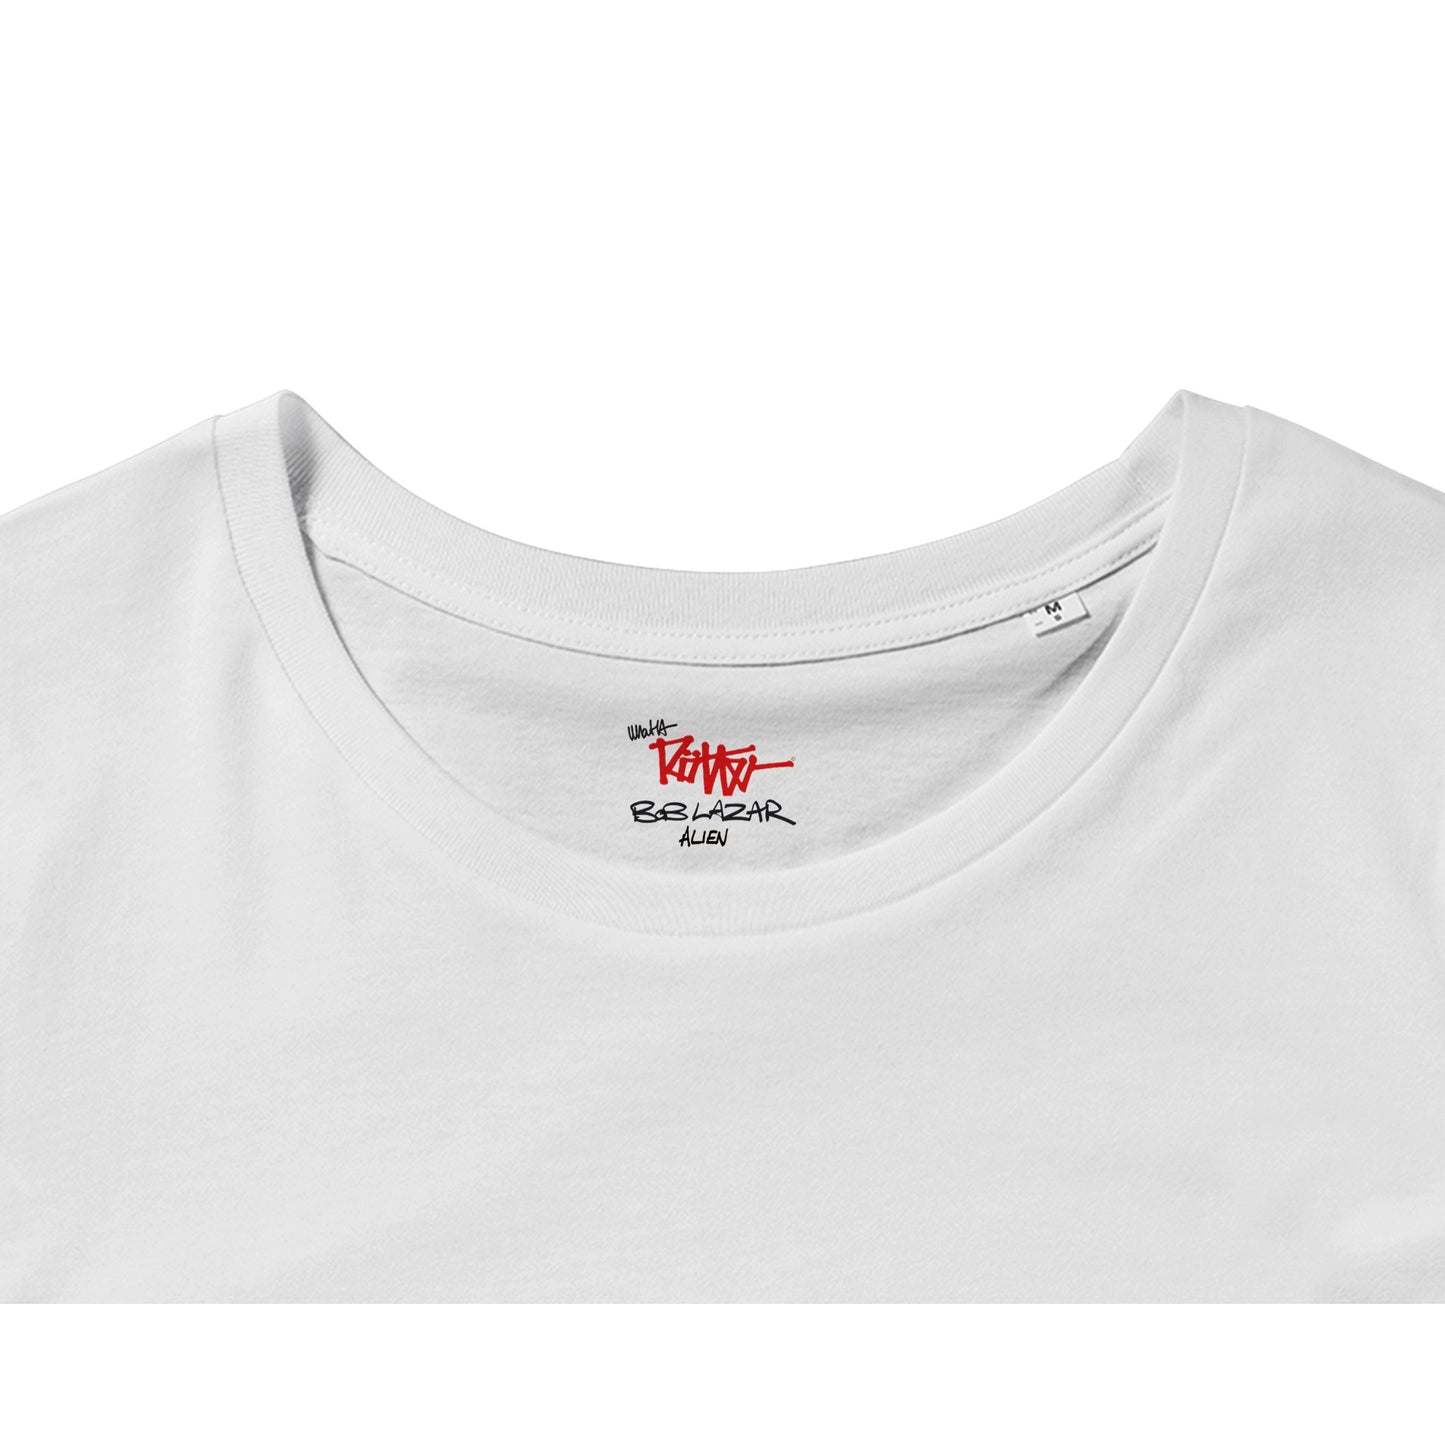 BOB LAZAR - XENO- Organic Unisex Crewneck T-shirt